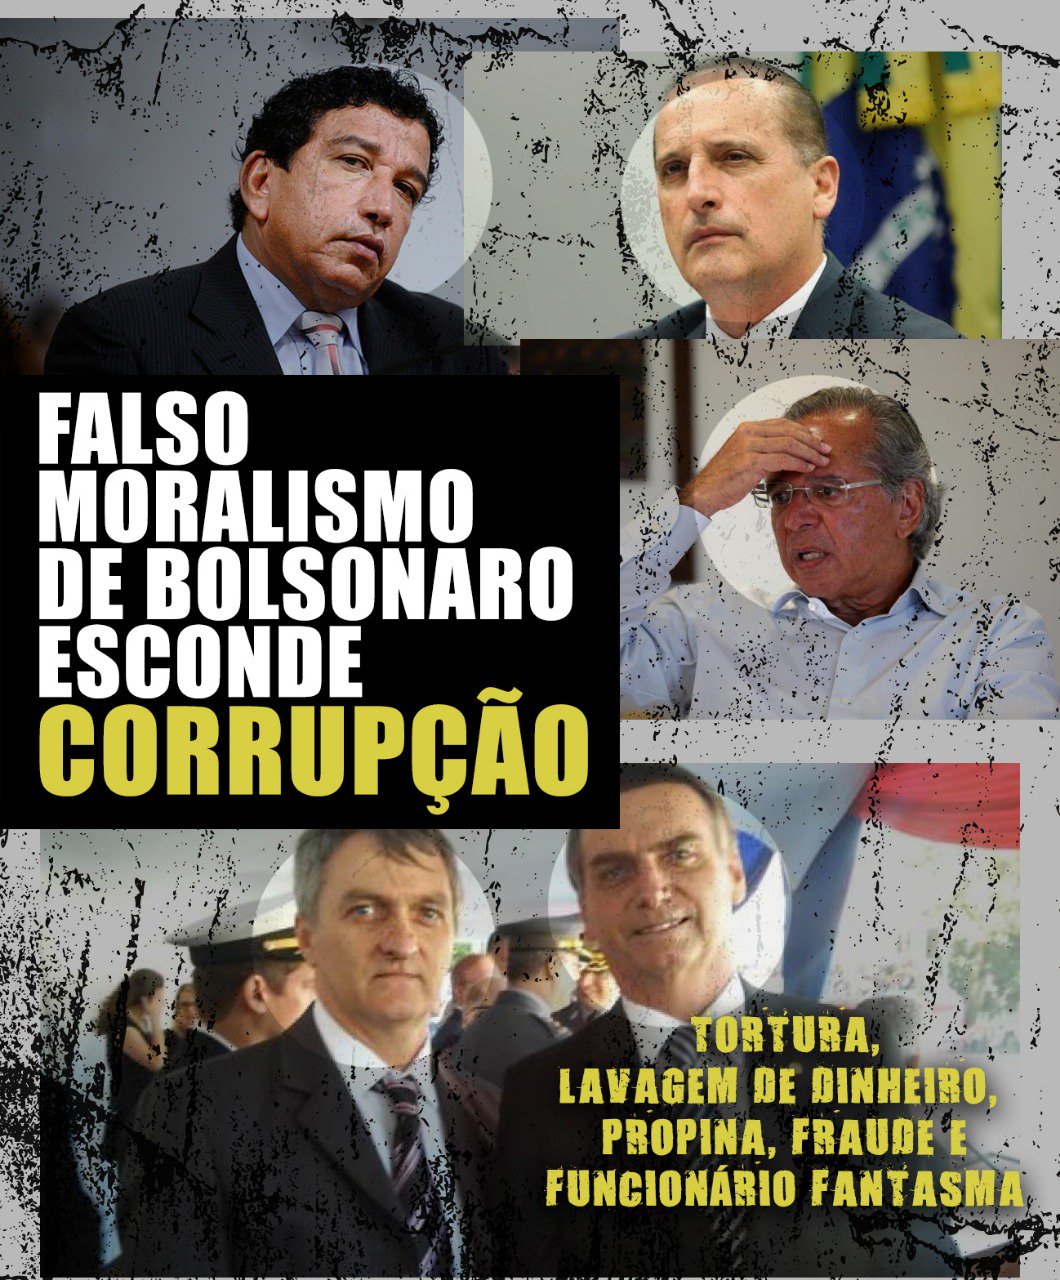 Falso moralismo de Bolsonaro esconde corrupção